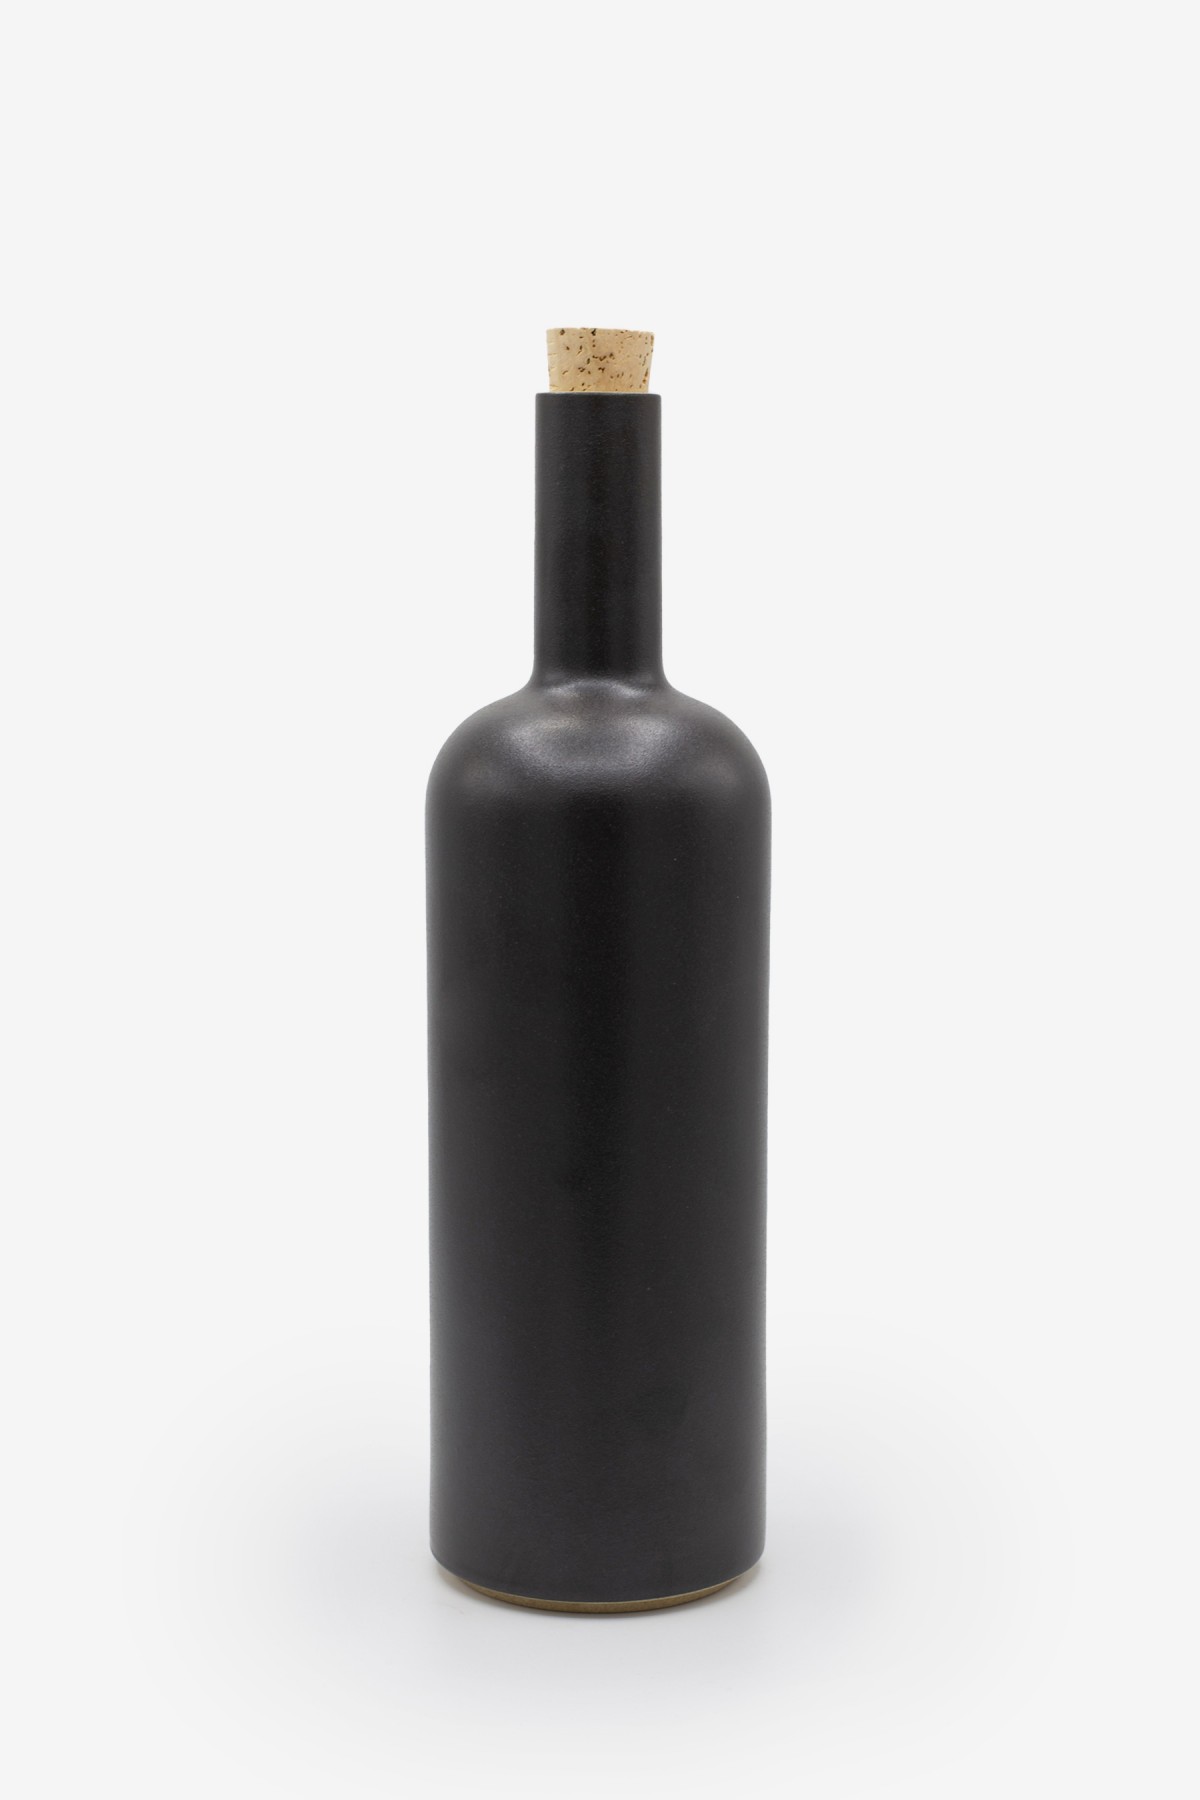 Hasami Porcelain Bottle in Black